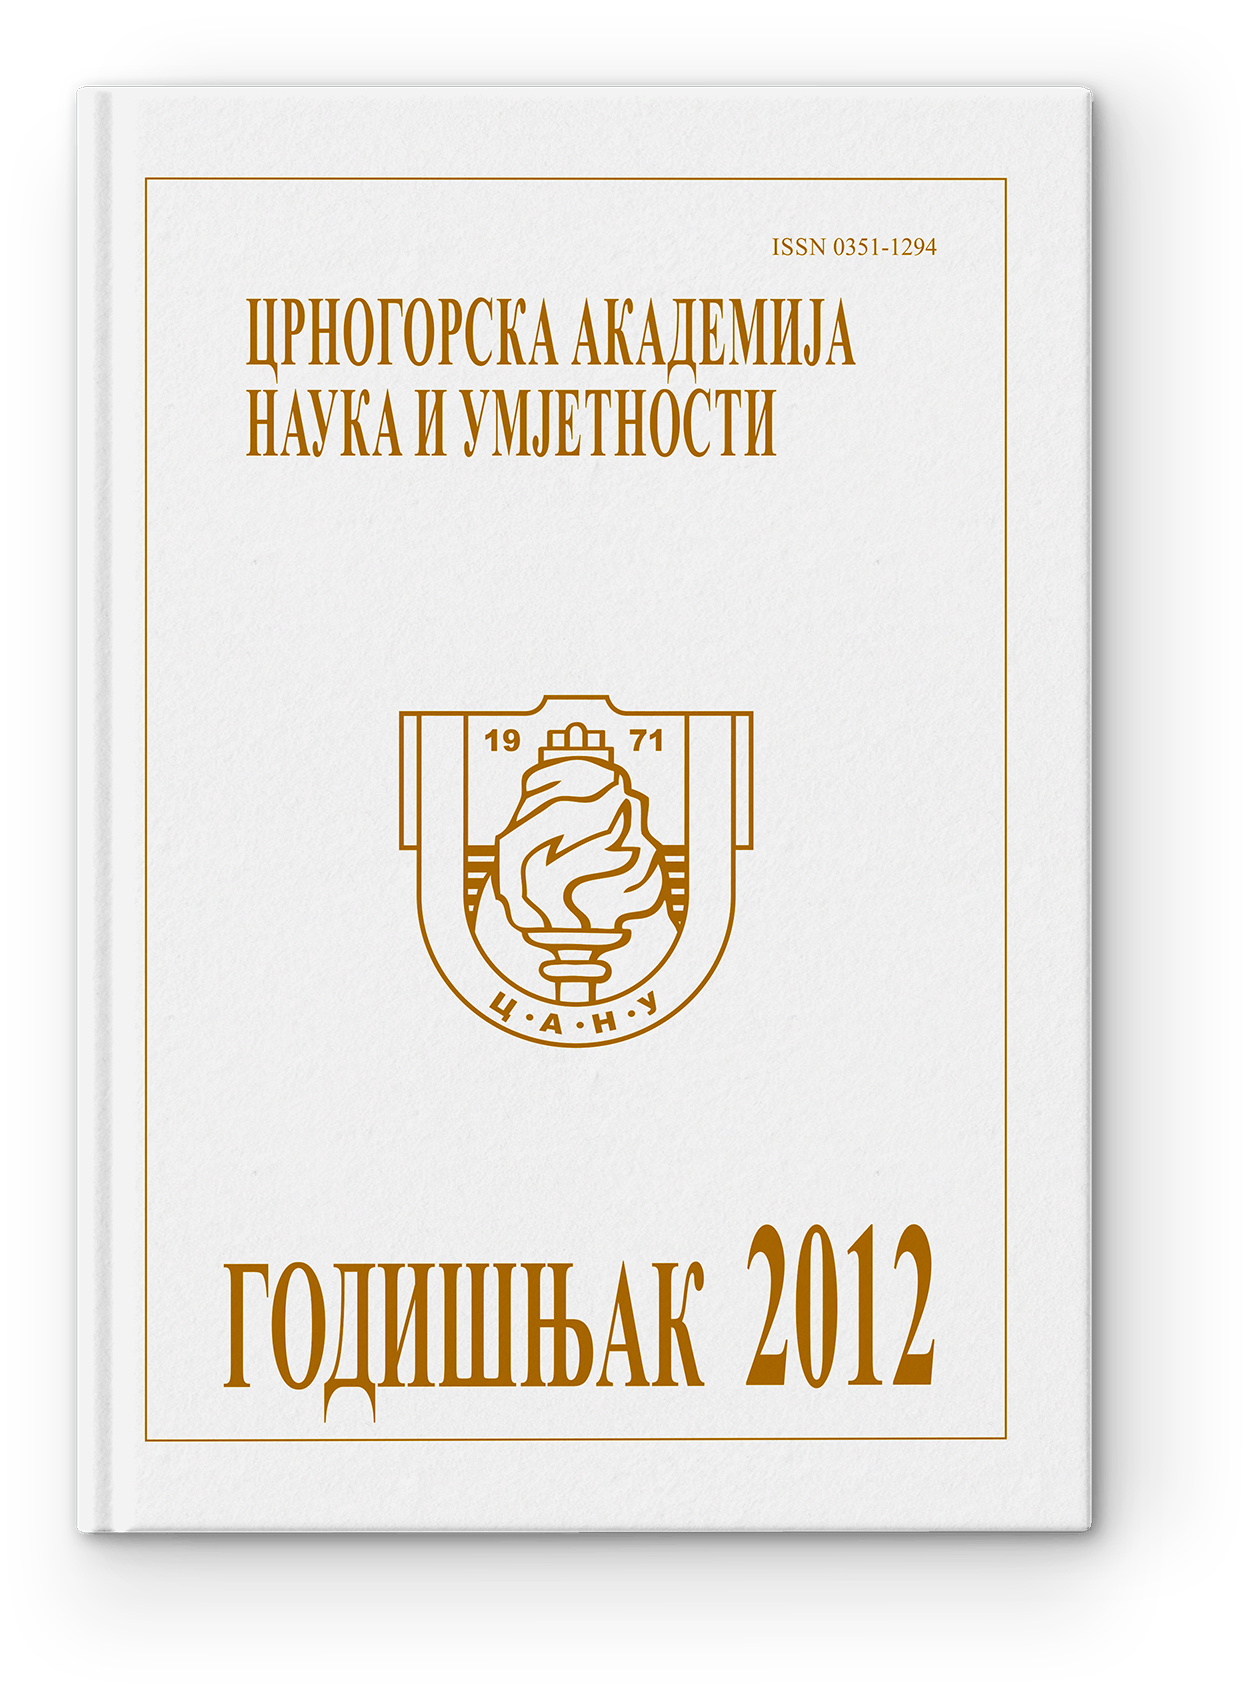 Godišnjak 2012